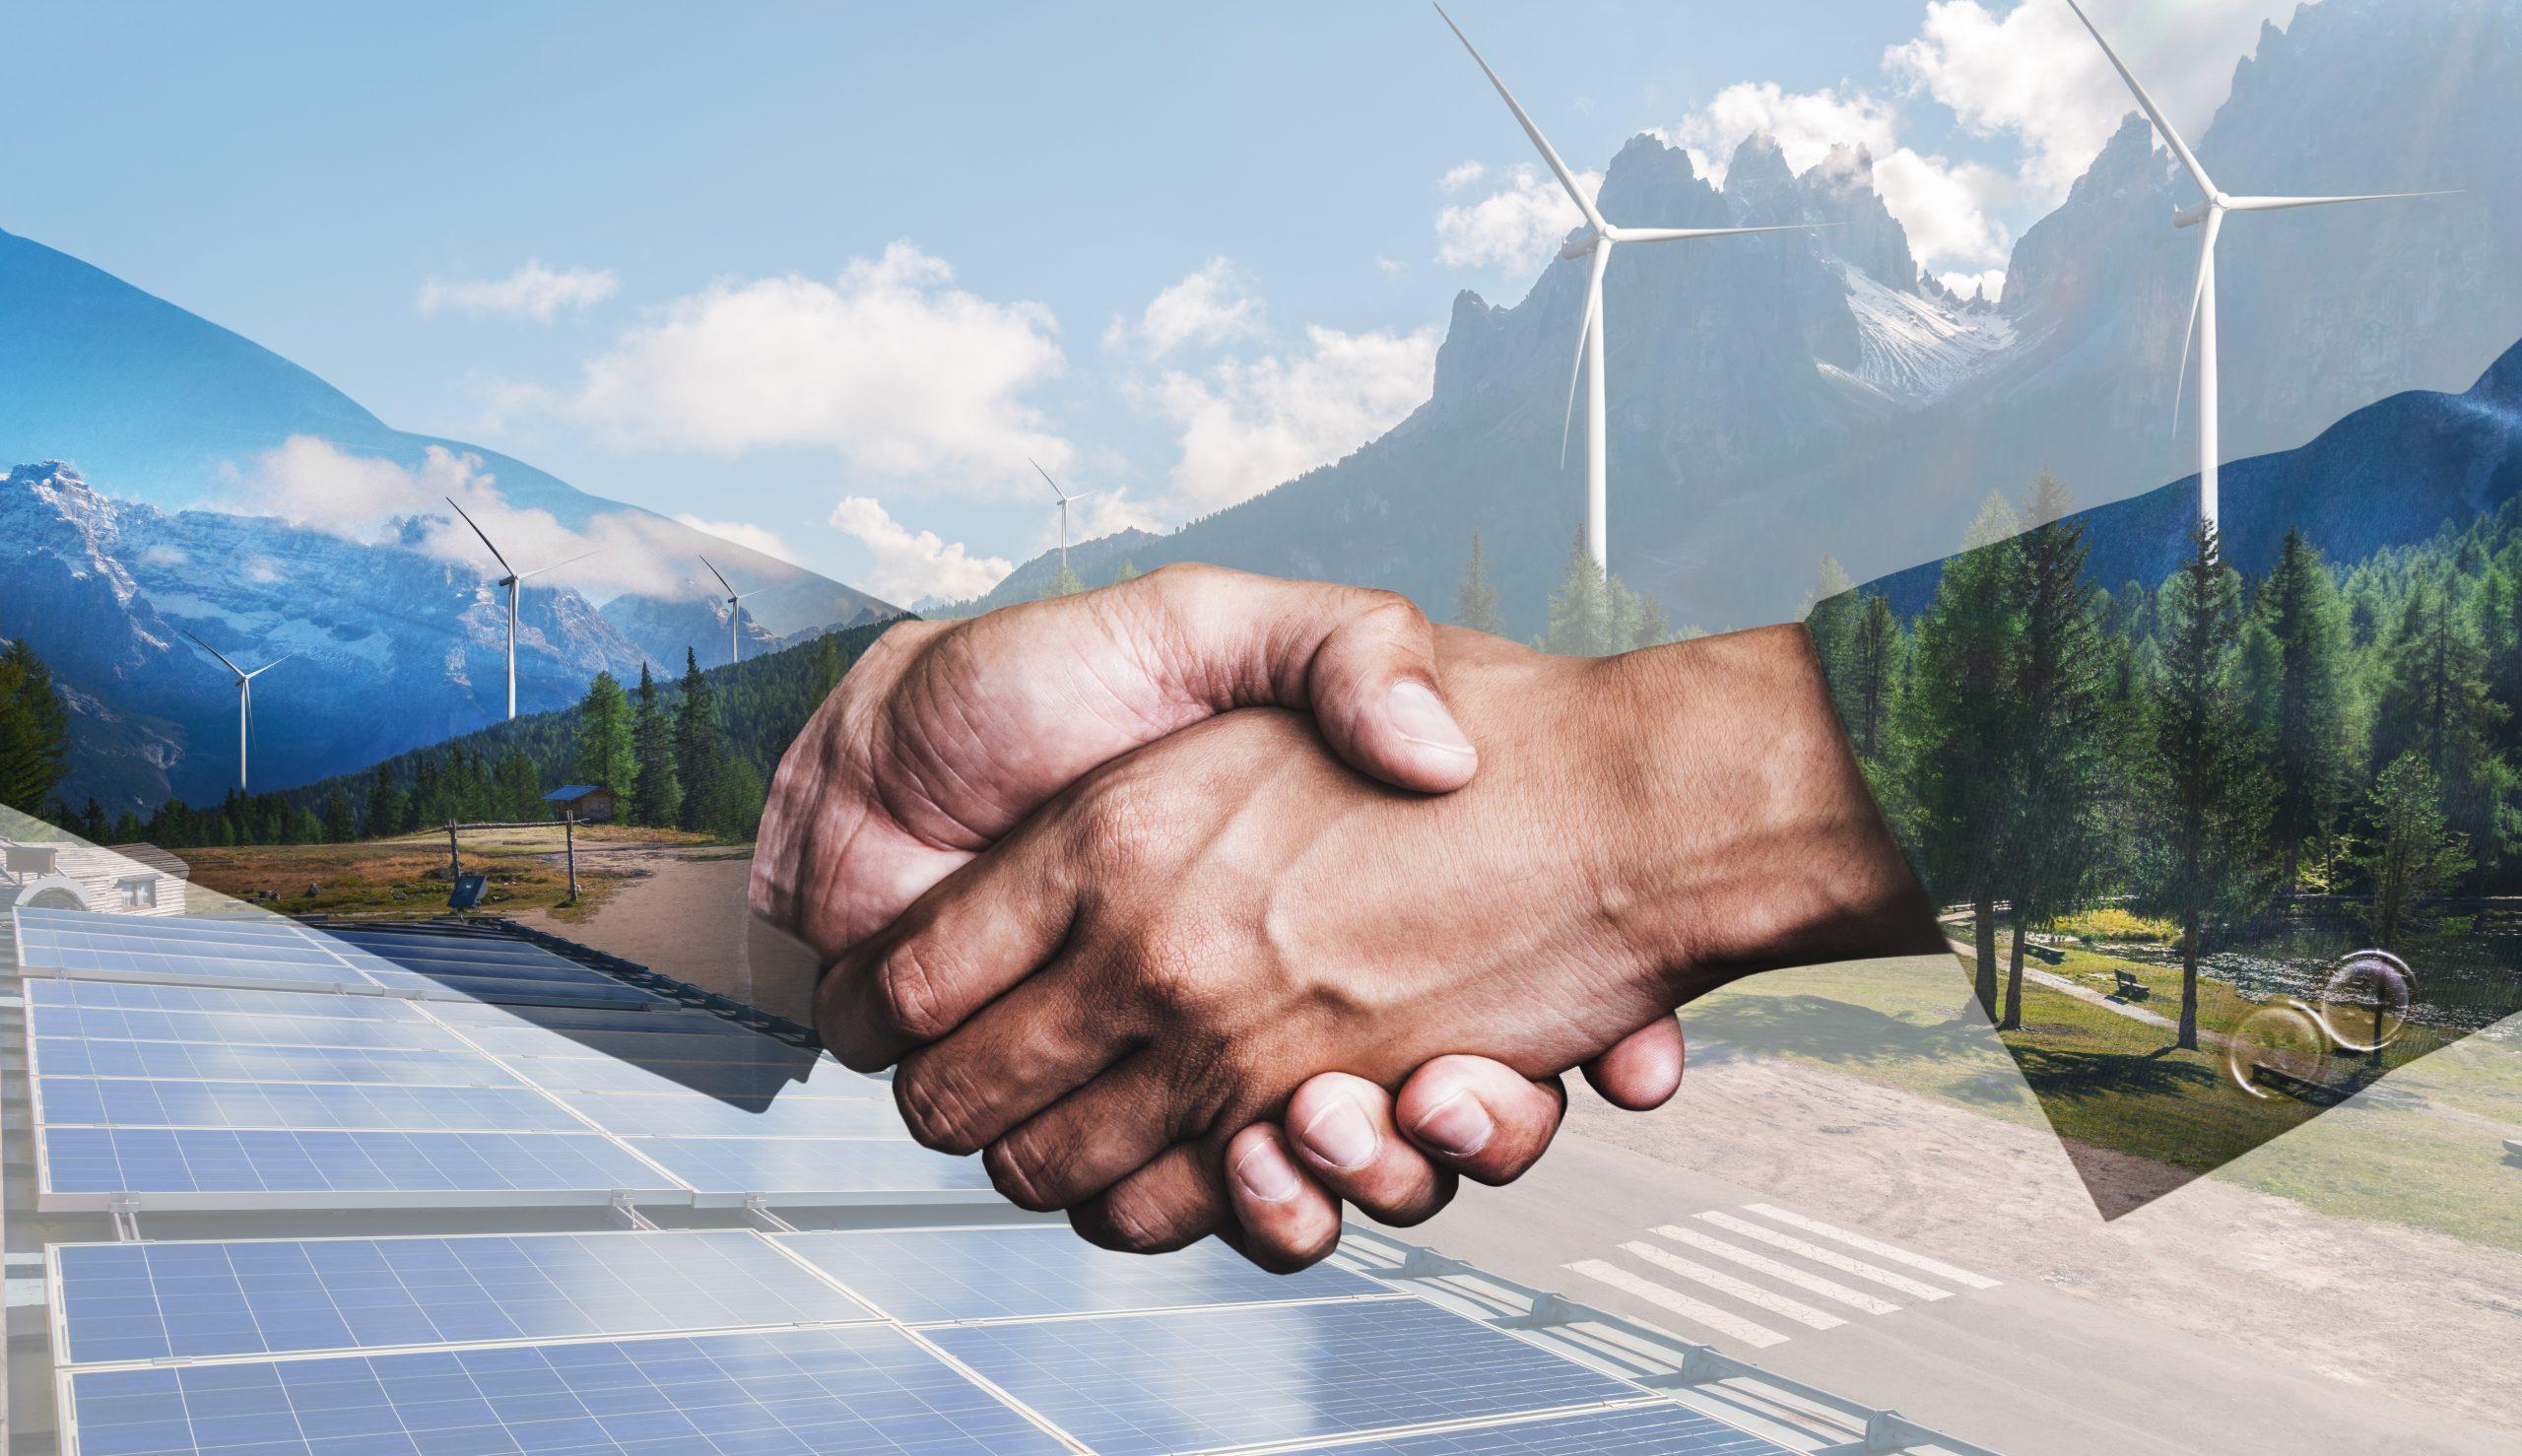 Doppelbelichtungsgrafik von Geschäftsleuten bei Handschlag mit Windkraftanlage, Bauernhof und grüne erneuerbare Energie im Hintergrund. Konzept der Nachhaltigkeit Entwicklung durch alternative Energie.